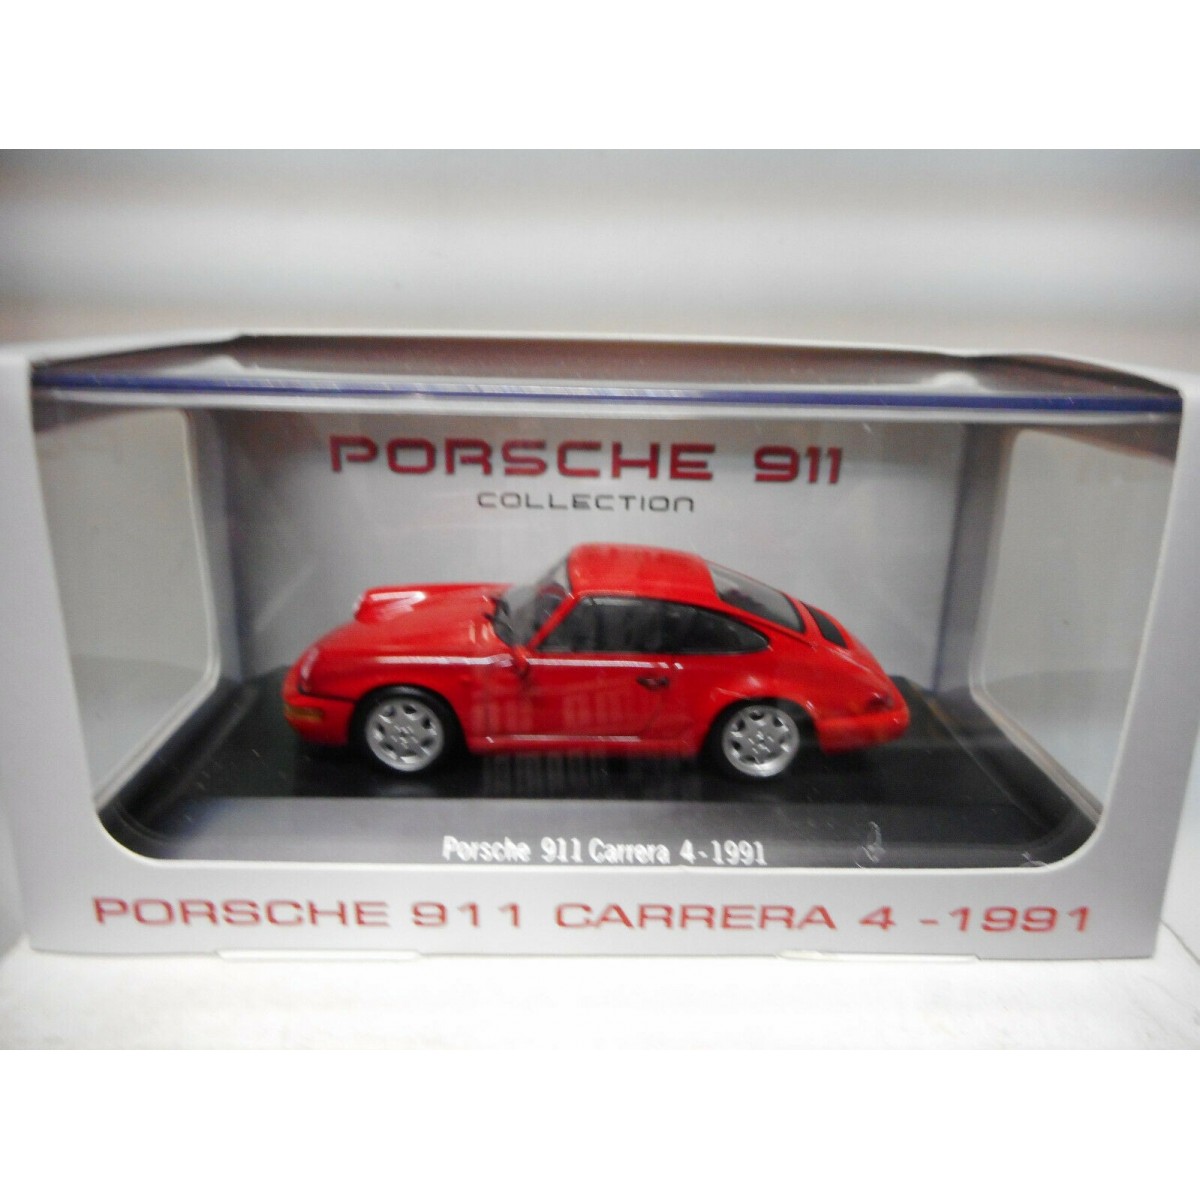 PORSCHE 911 CARRERA 4 1991 PORSCHE COLLECTION NOREV ATLAS IXO 1:43 - BCN  STOCK CARS